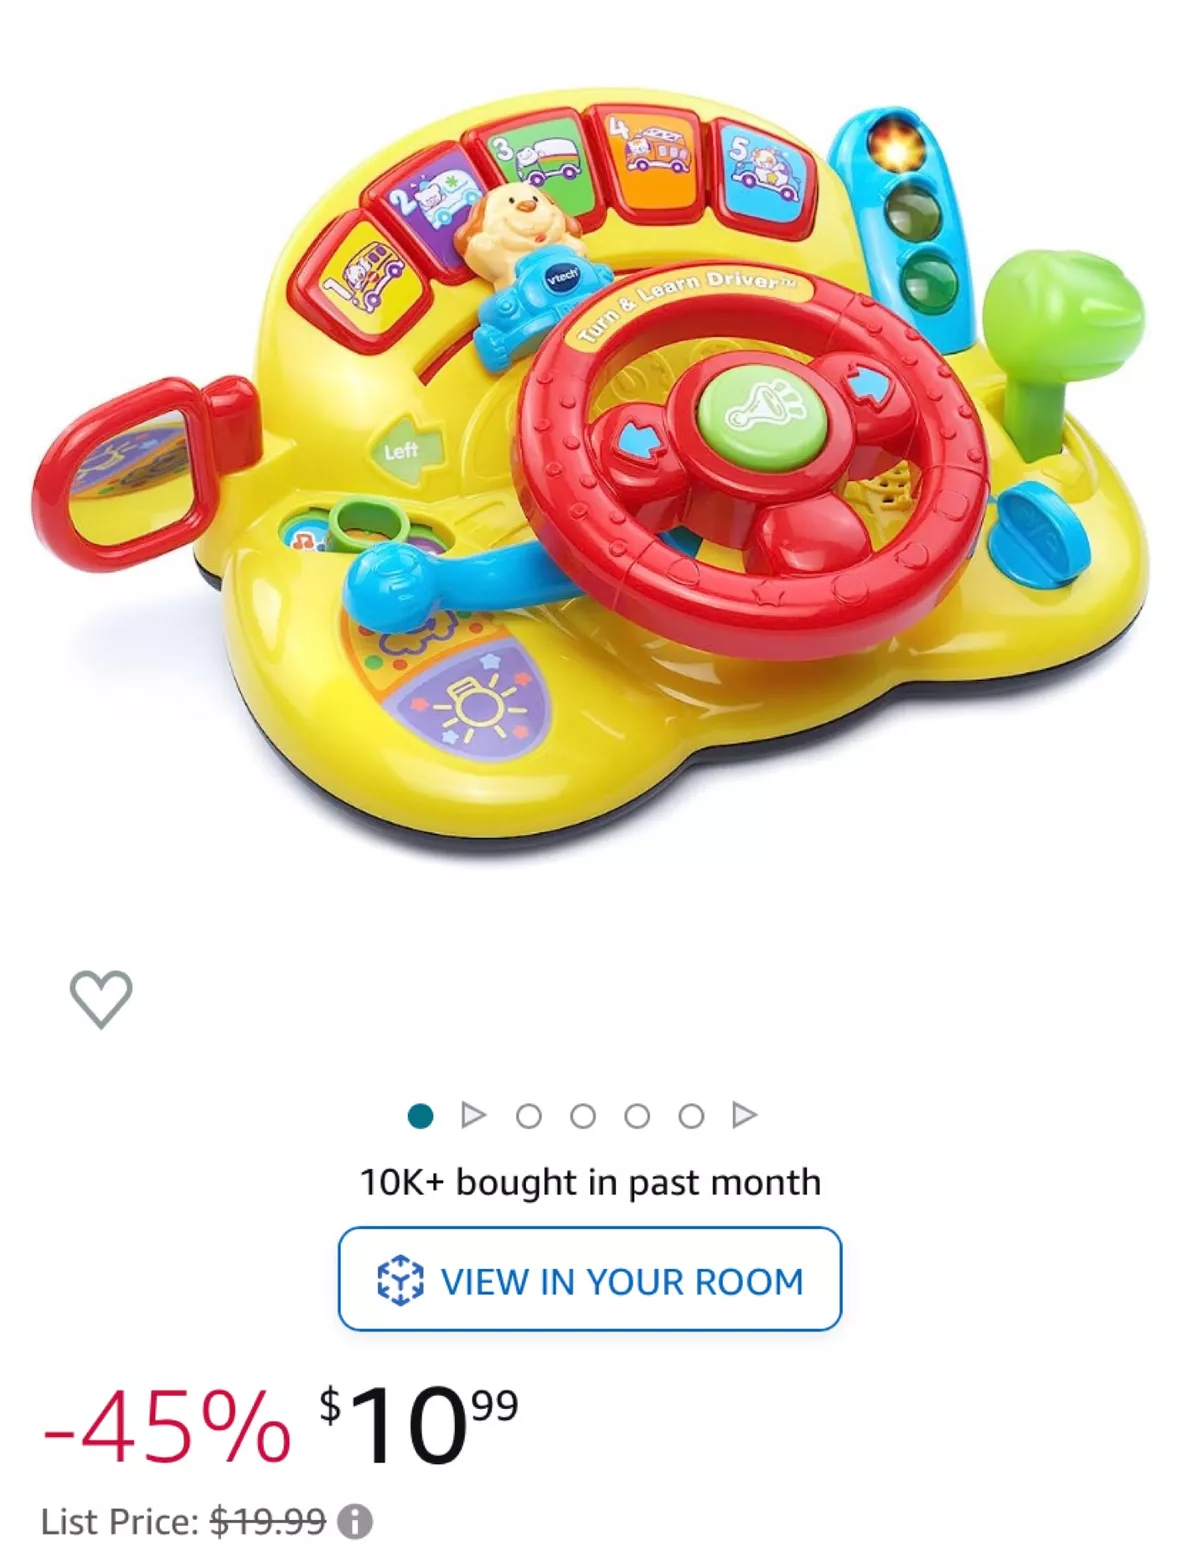 Toys under $10